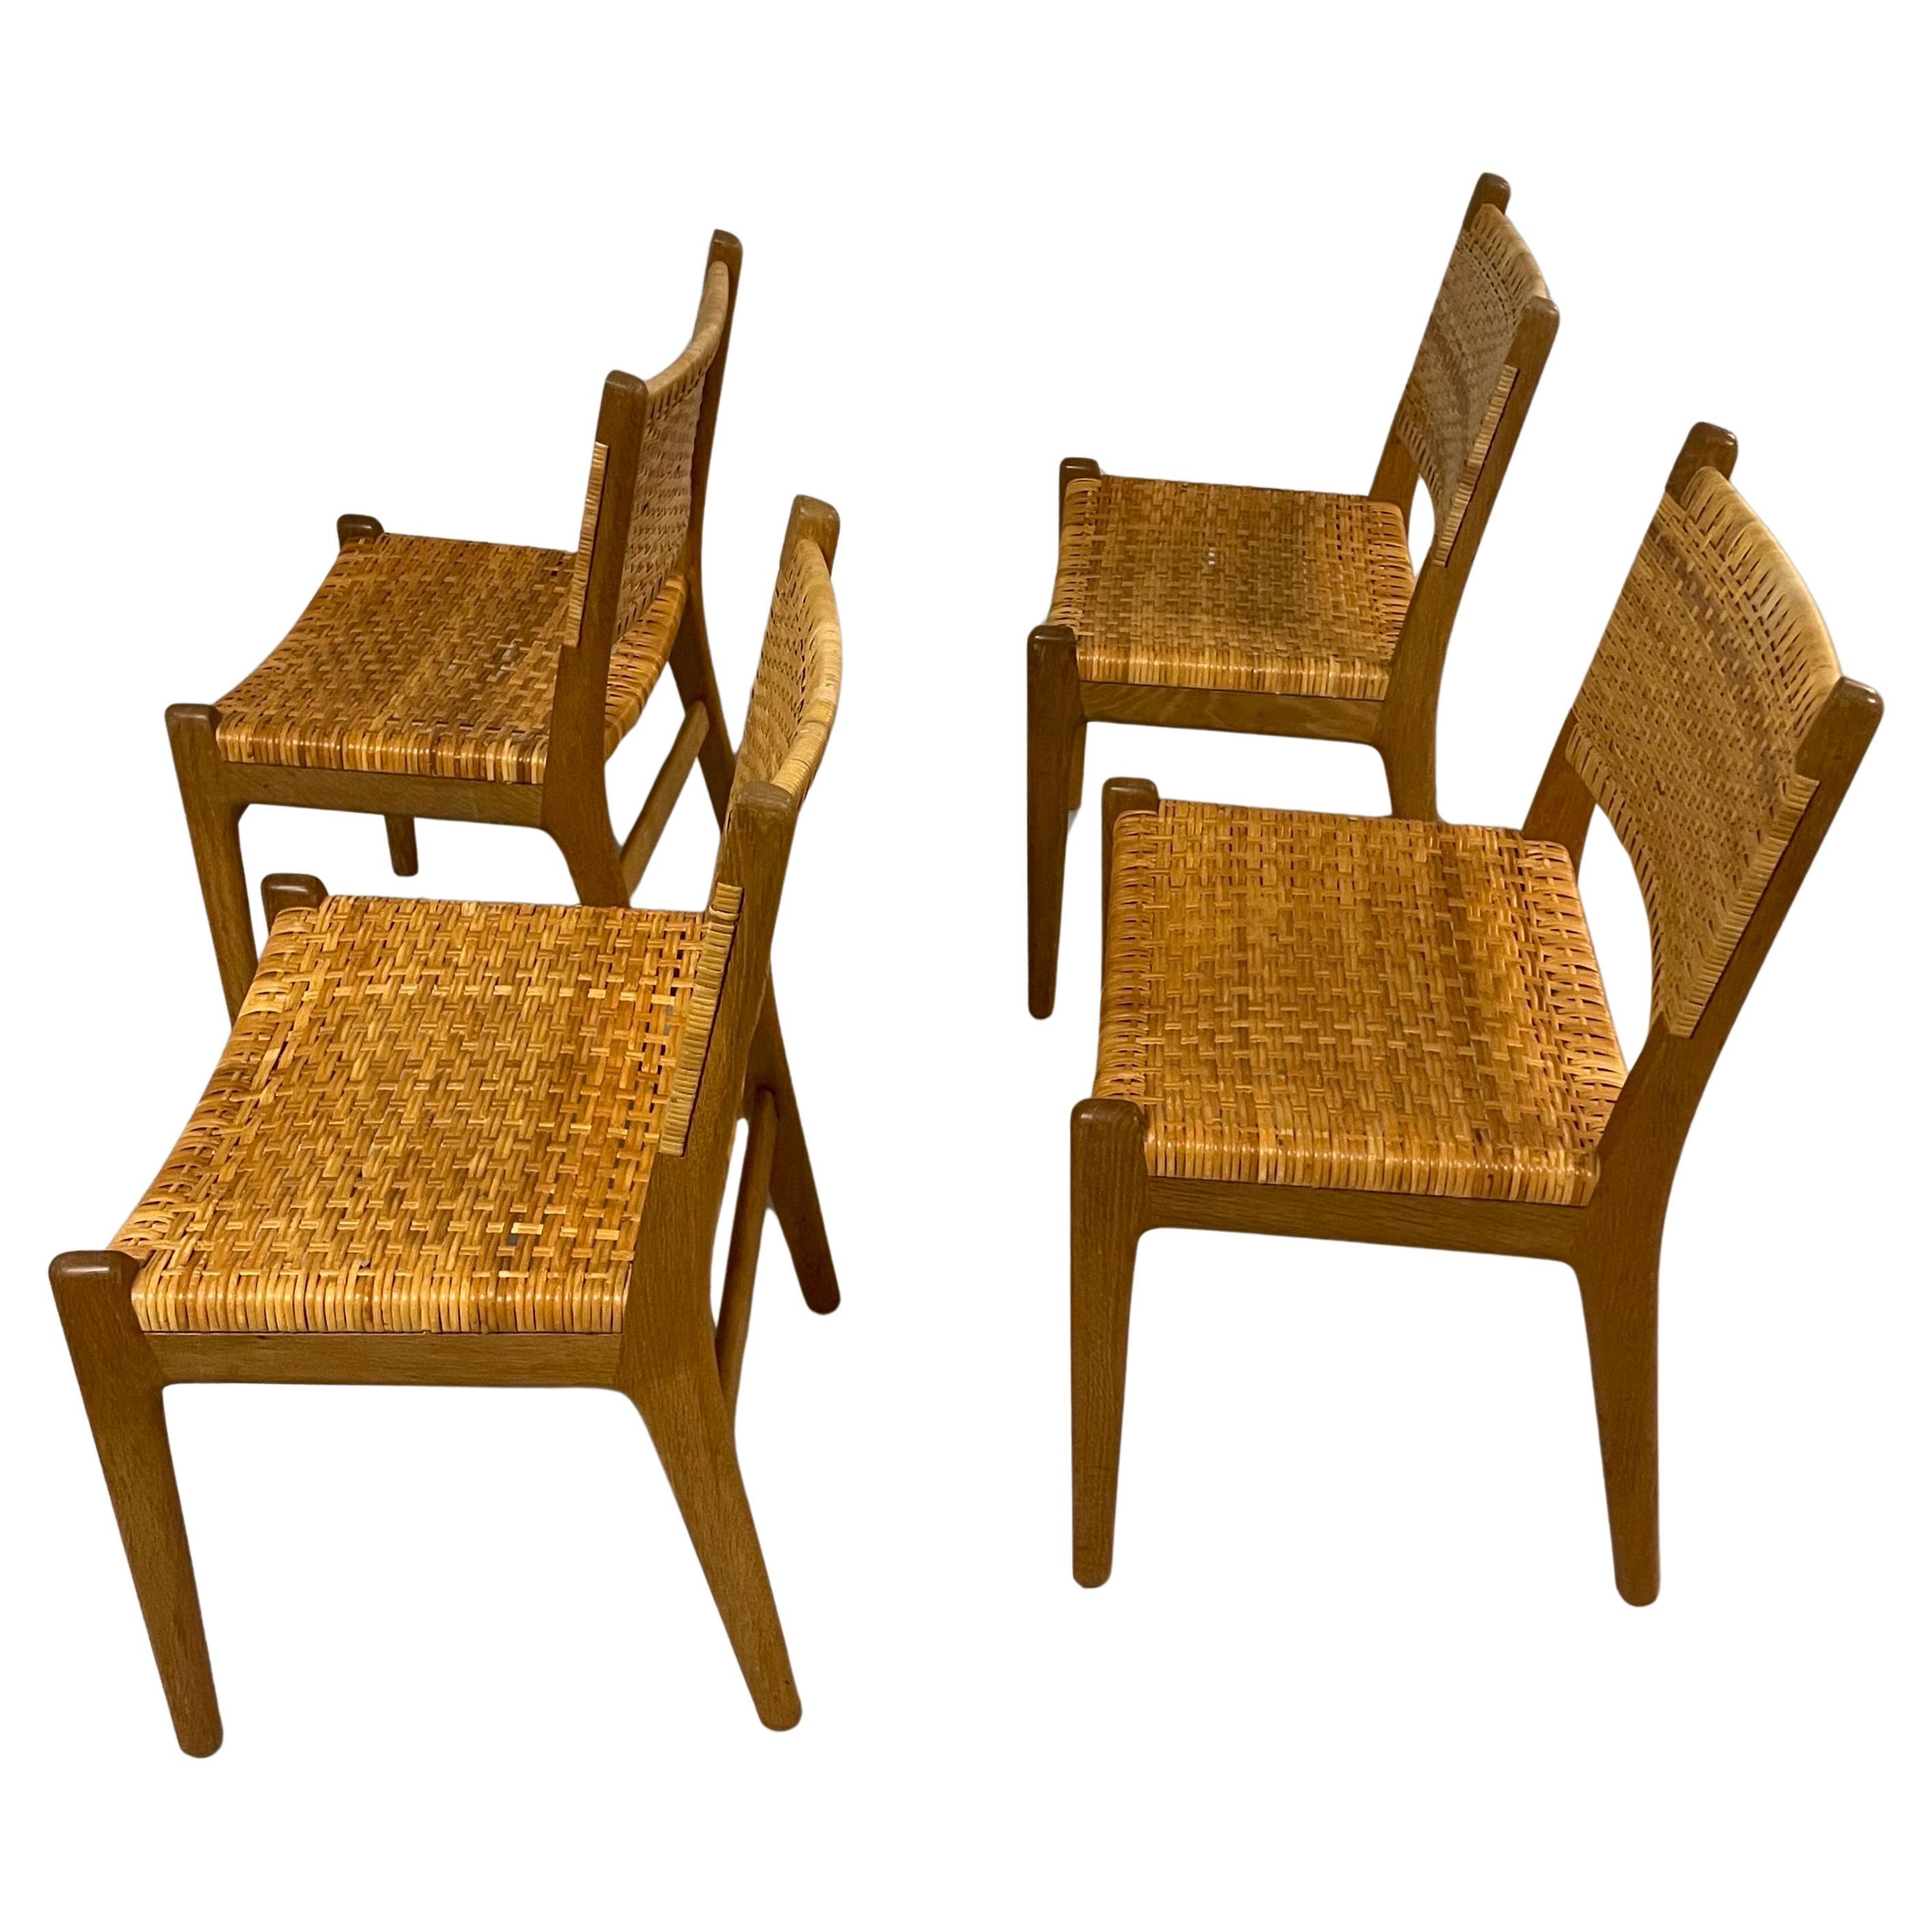 Un ensemble très rare de chaises de salle à manger modèle CH32 conçues par Hans J. Wegner et fabriquées pour Carl Hansen & Son dans les années 1950. Chêne massif avec un beau grain  et du rotin sur les sièges et le dossier. Ce modèle n'est plus